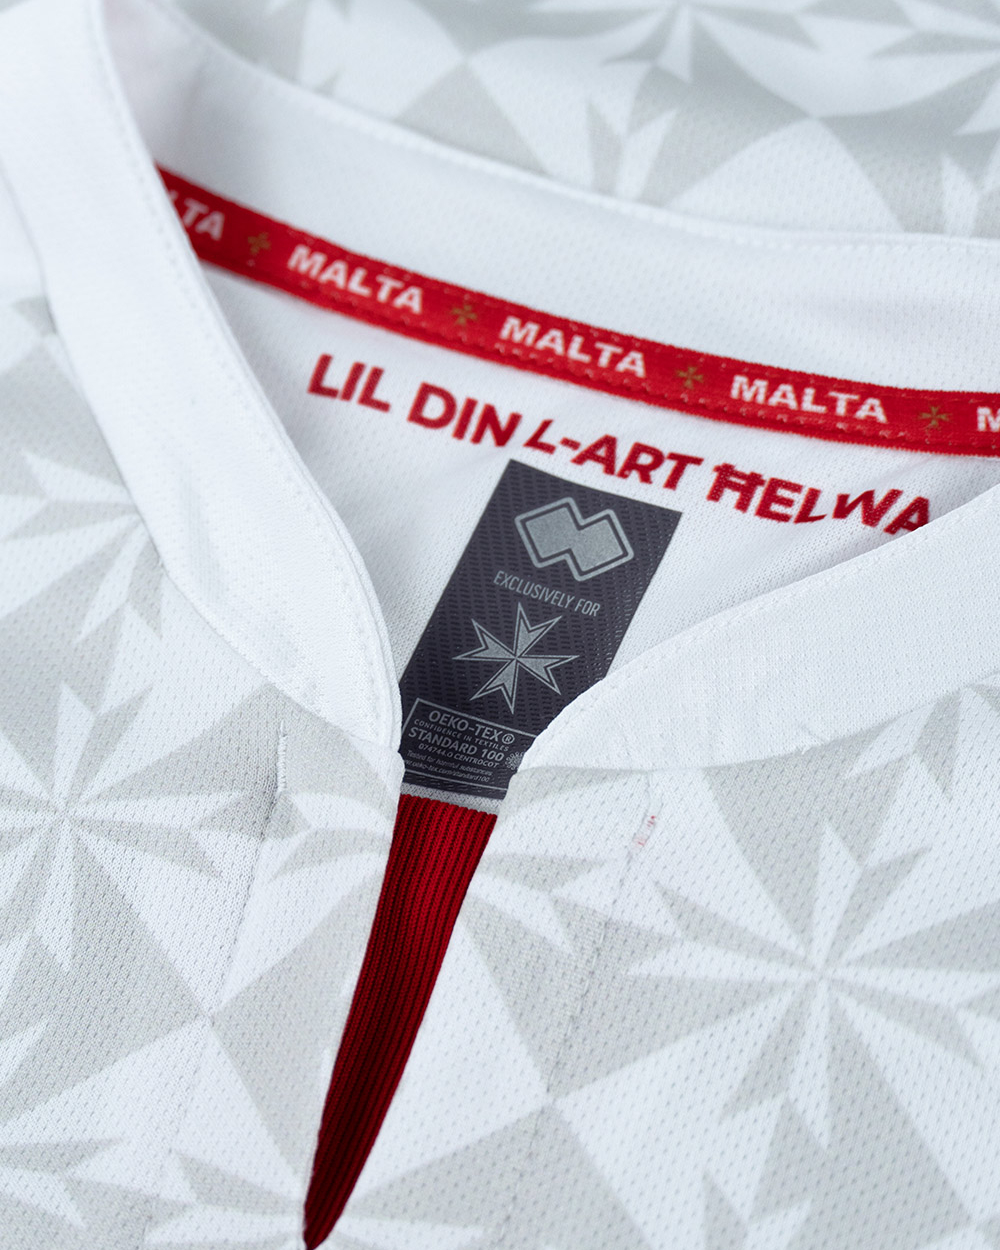 Malta Away Kit (white)